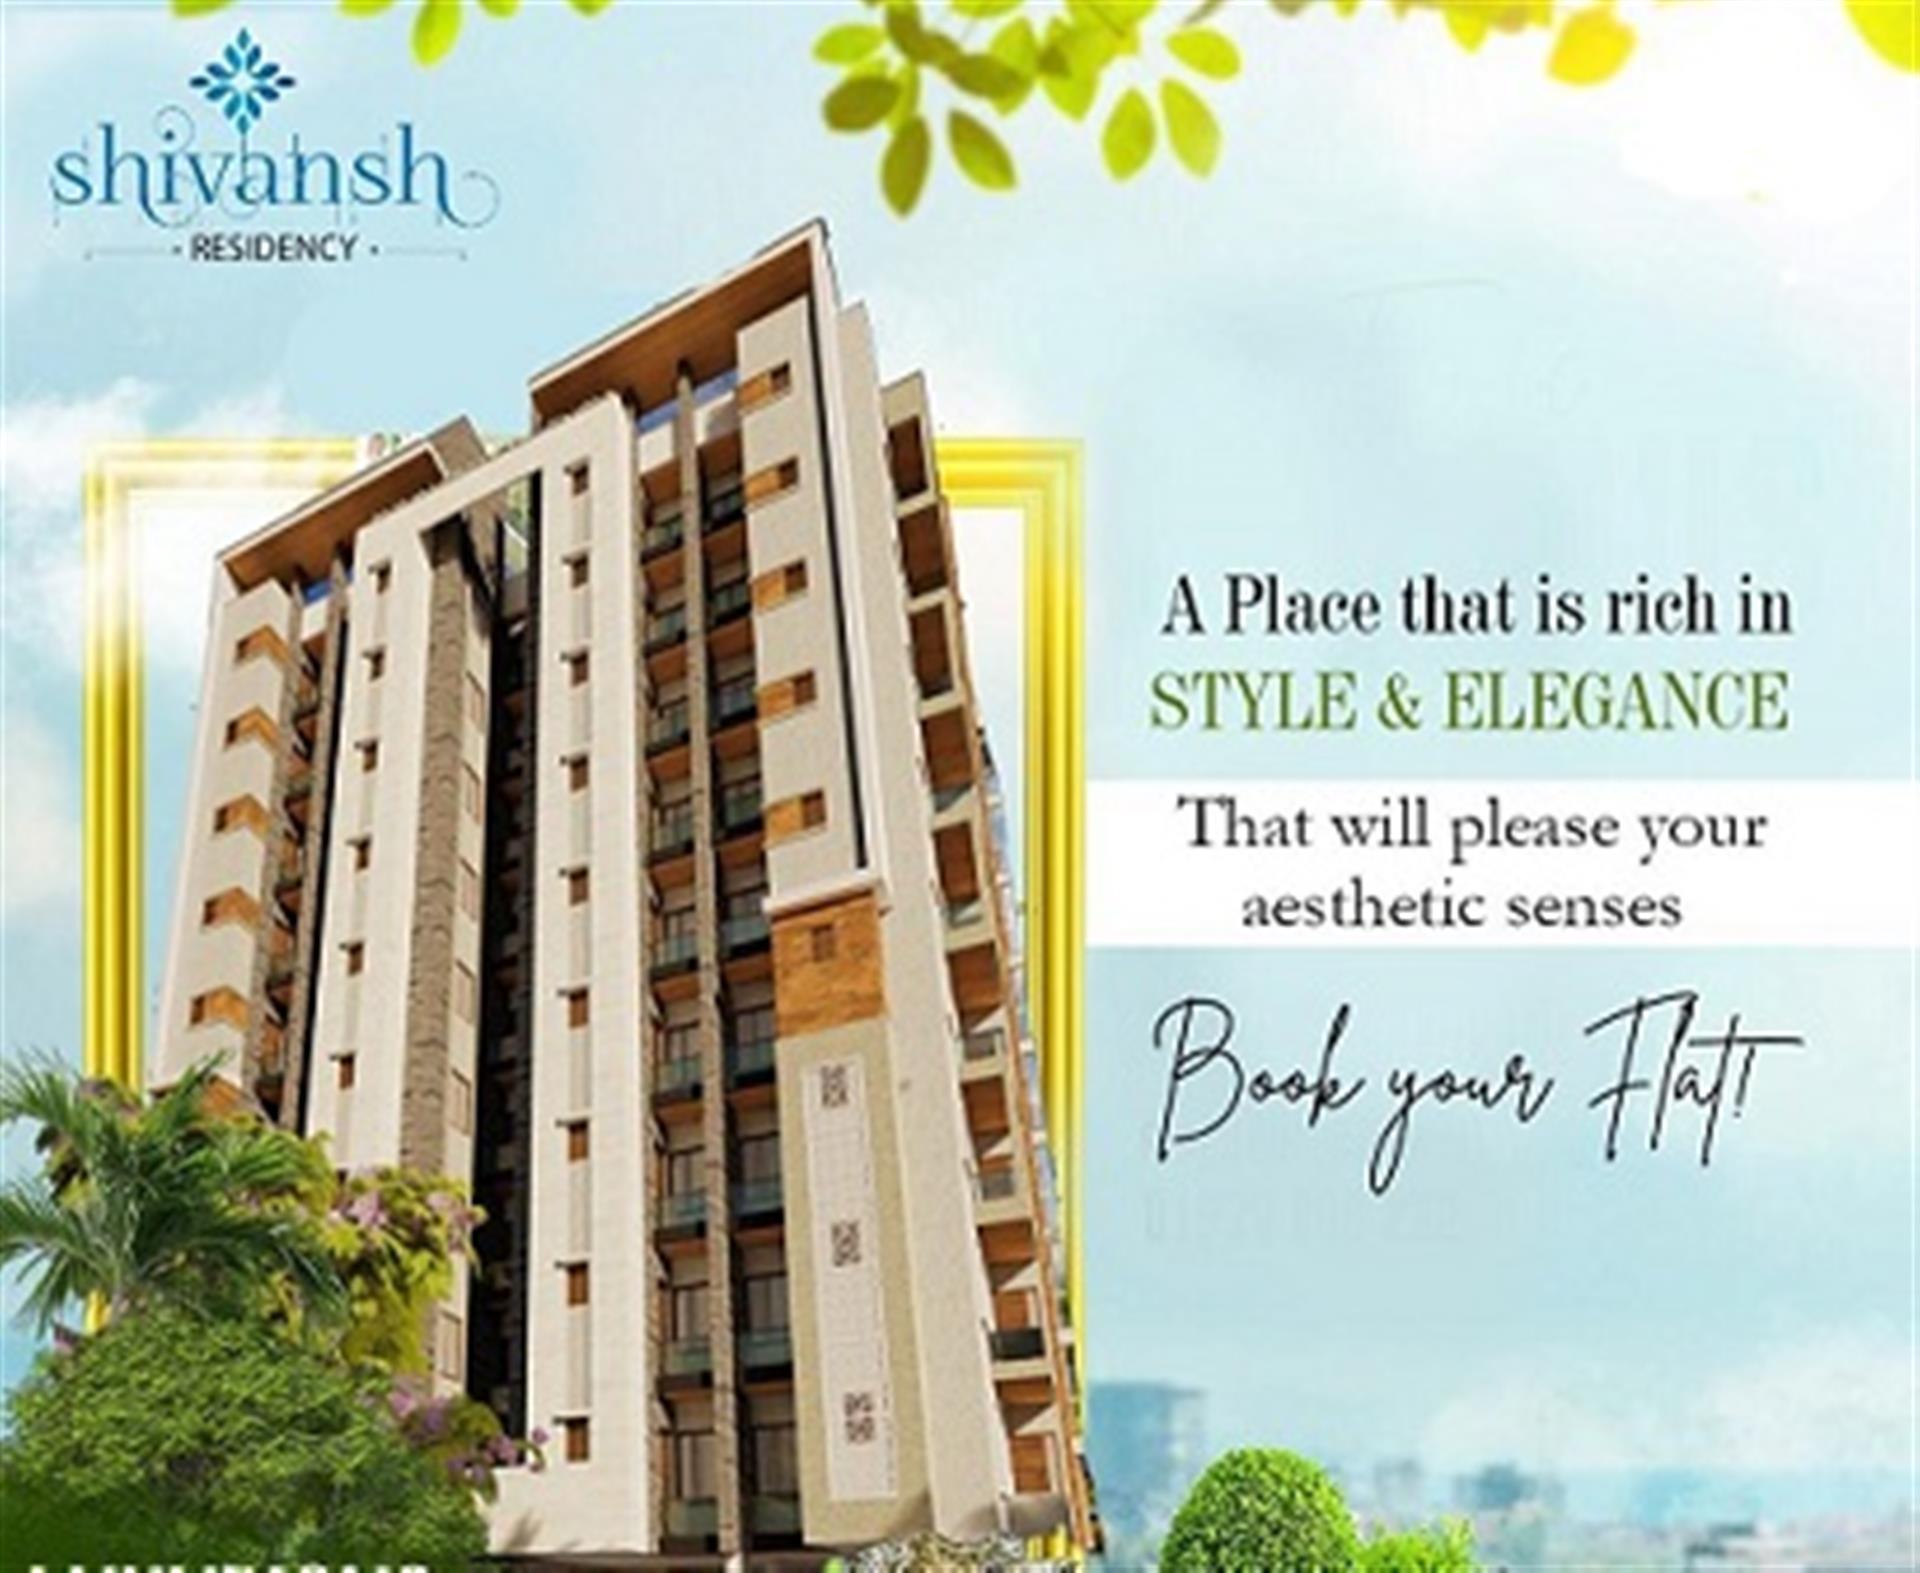 shivansh-residency-vaishali-nagar-extension-jaipur-2-4-bhk-apartment